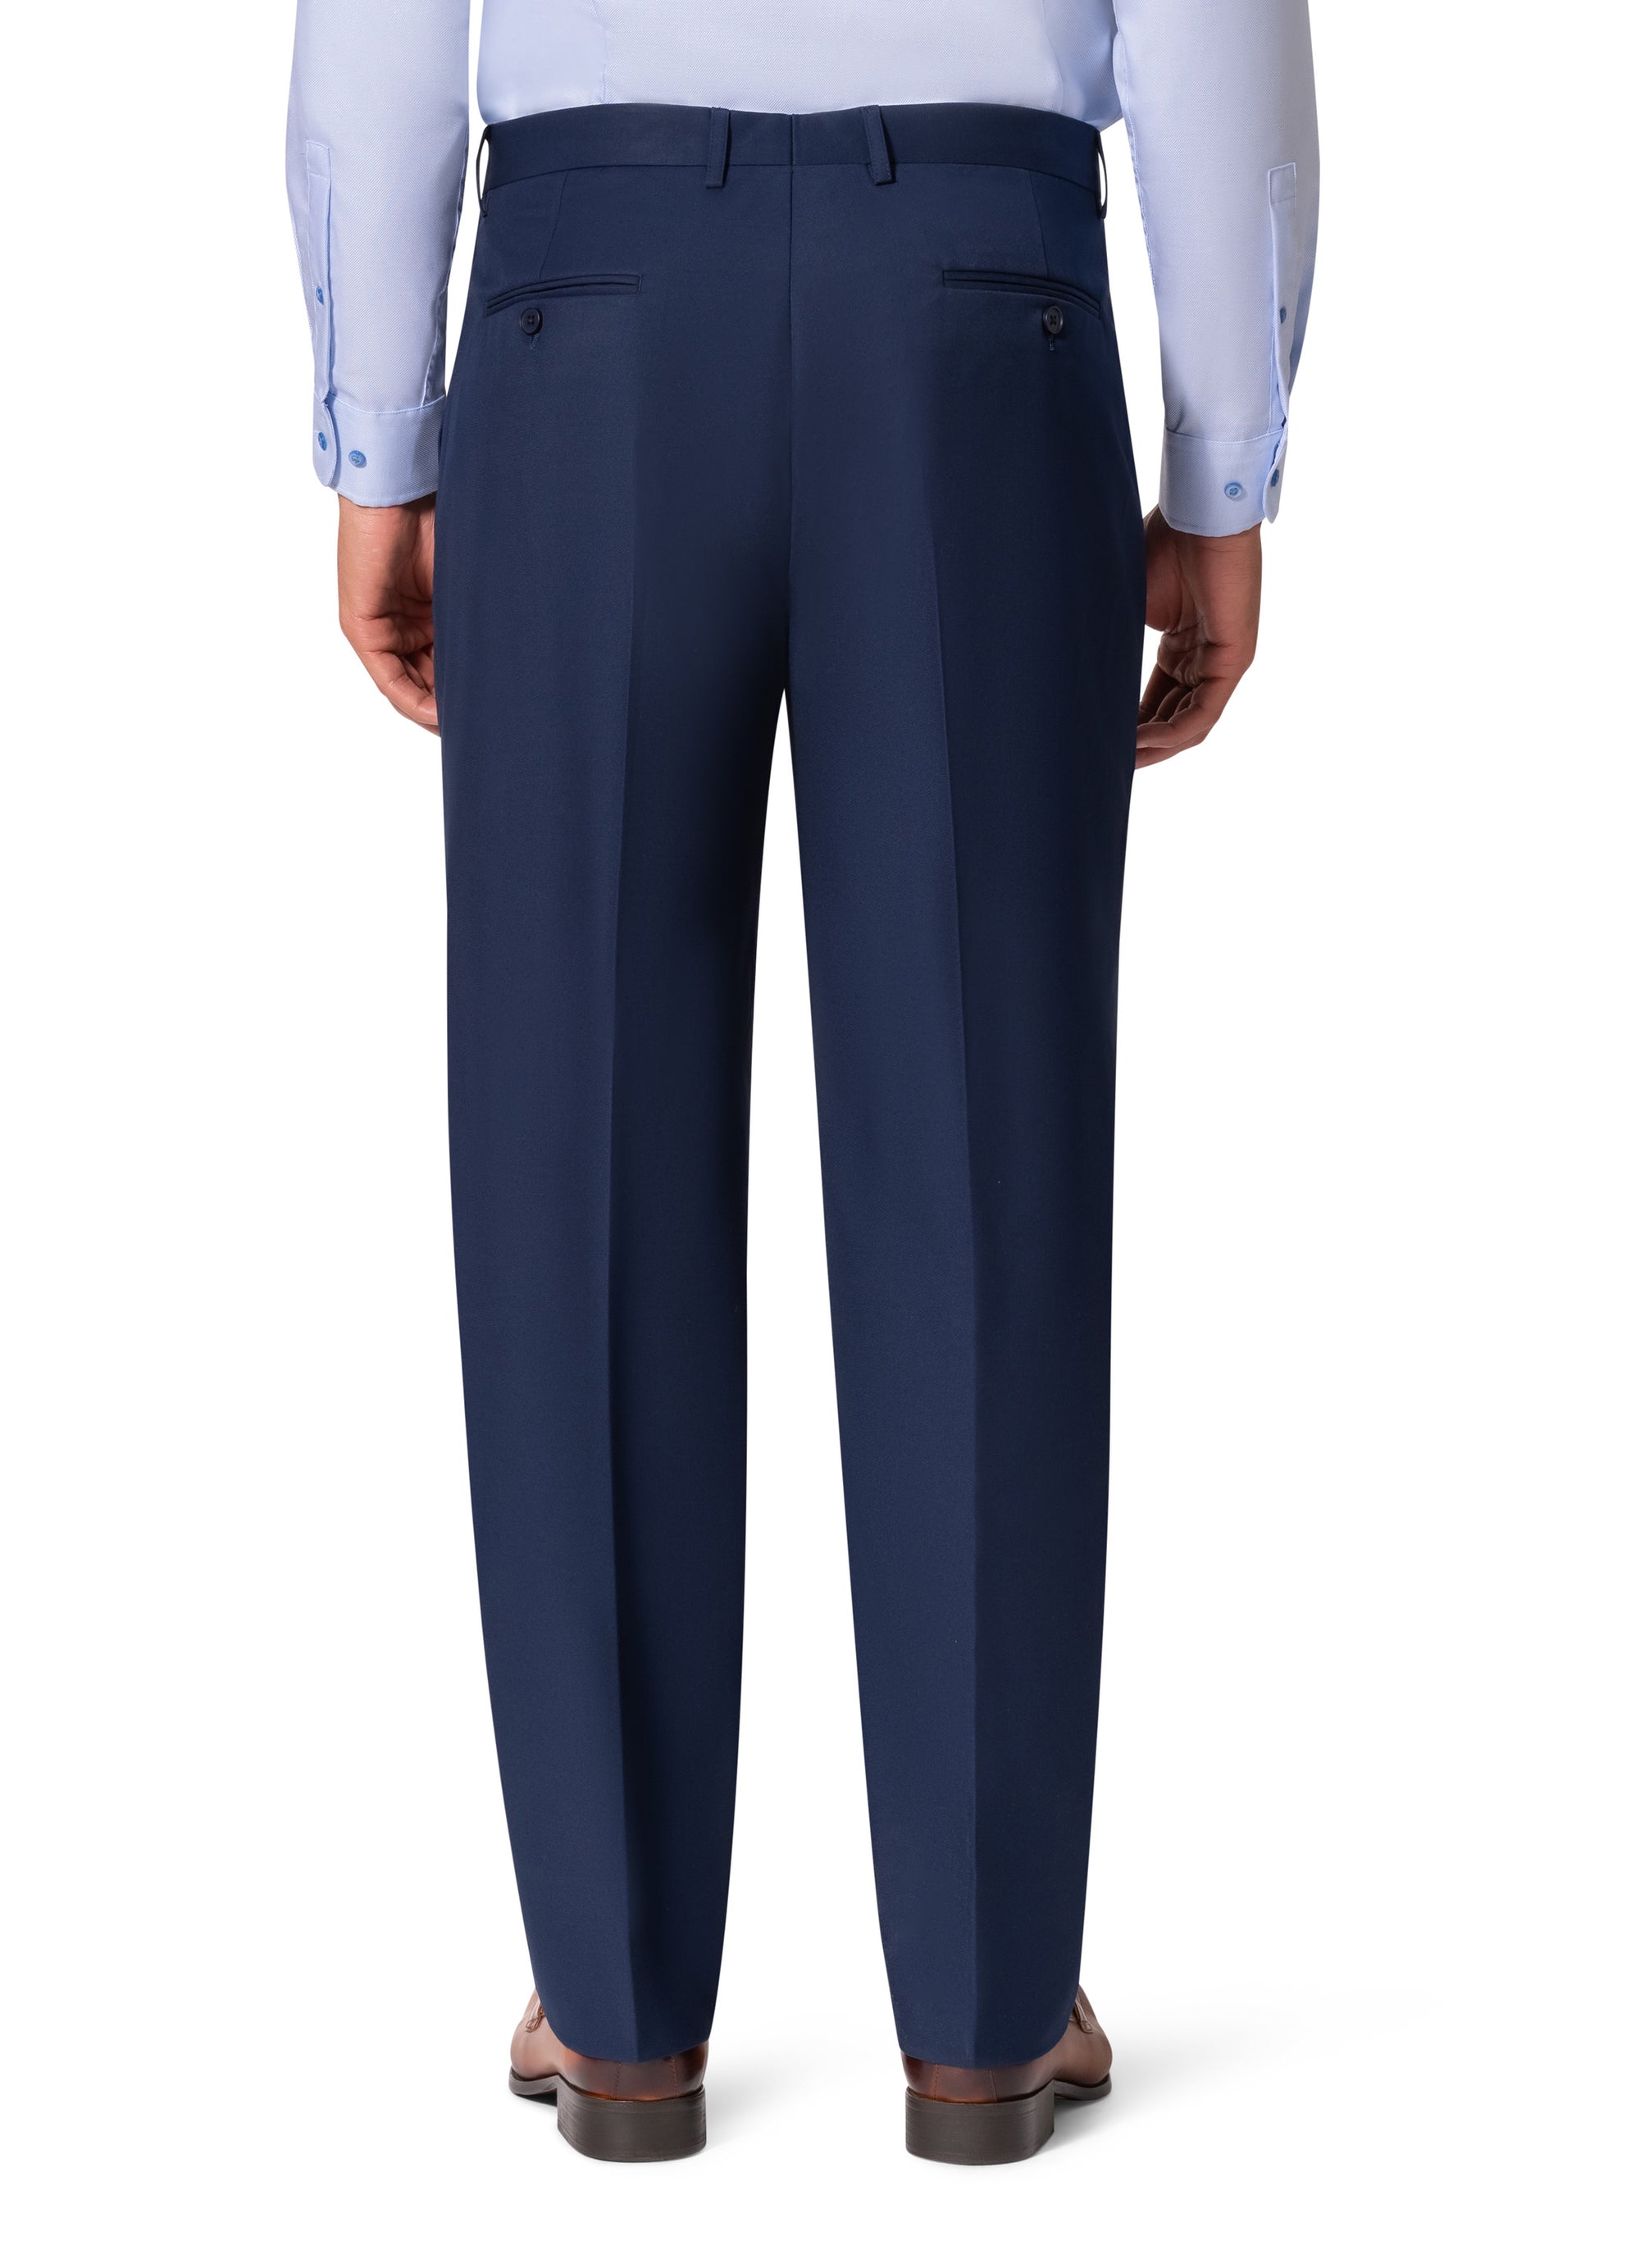 Berragamo A6732 D/B Slim Fit Suit - New Blue